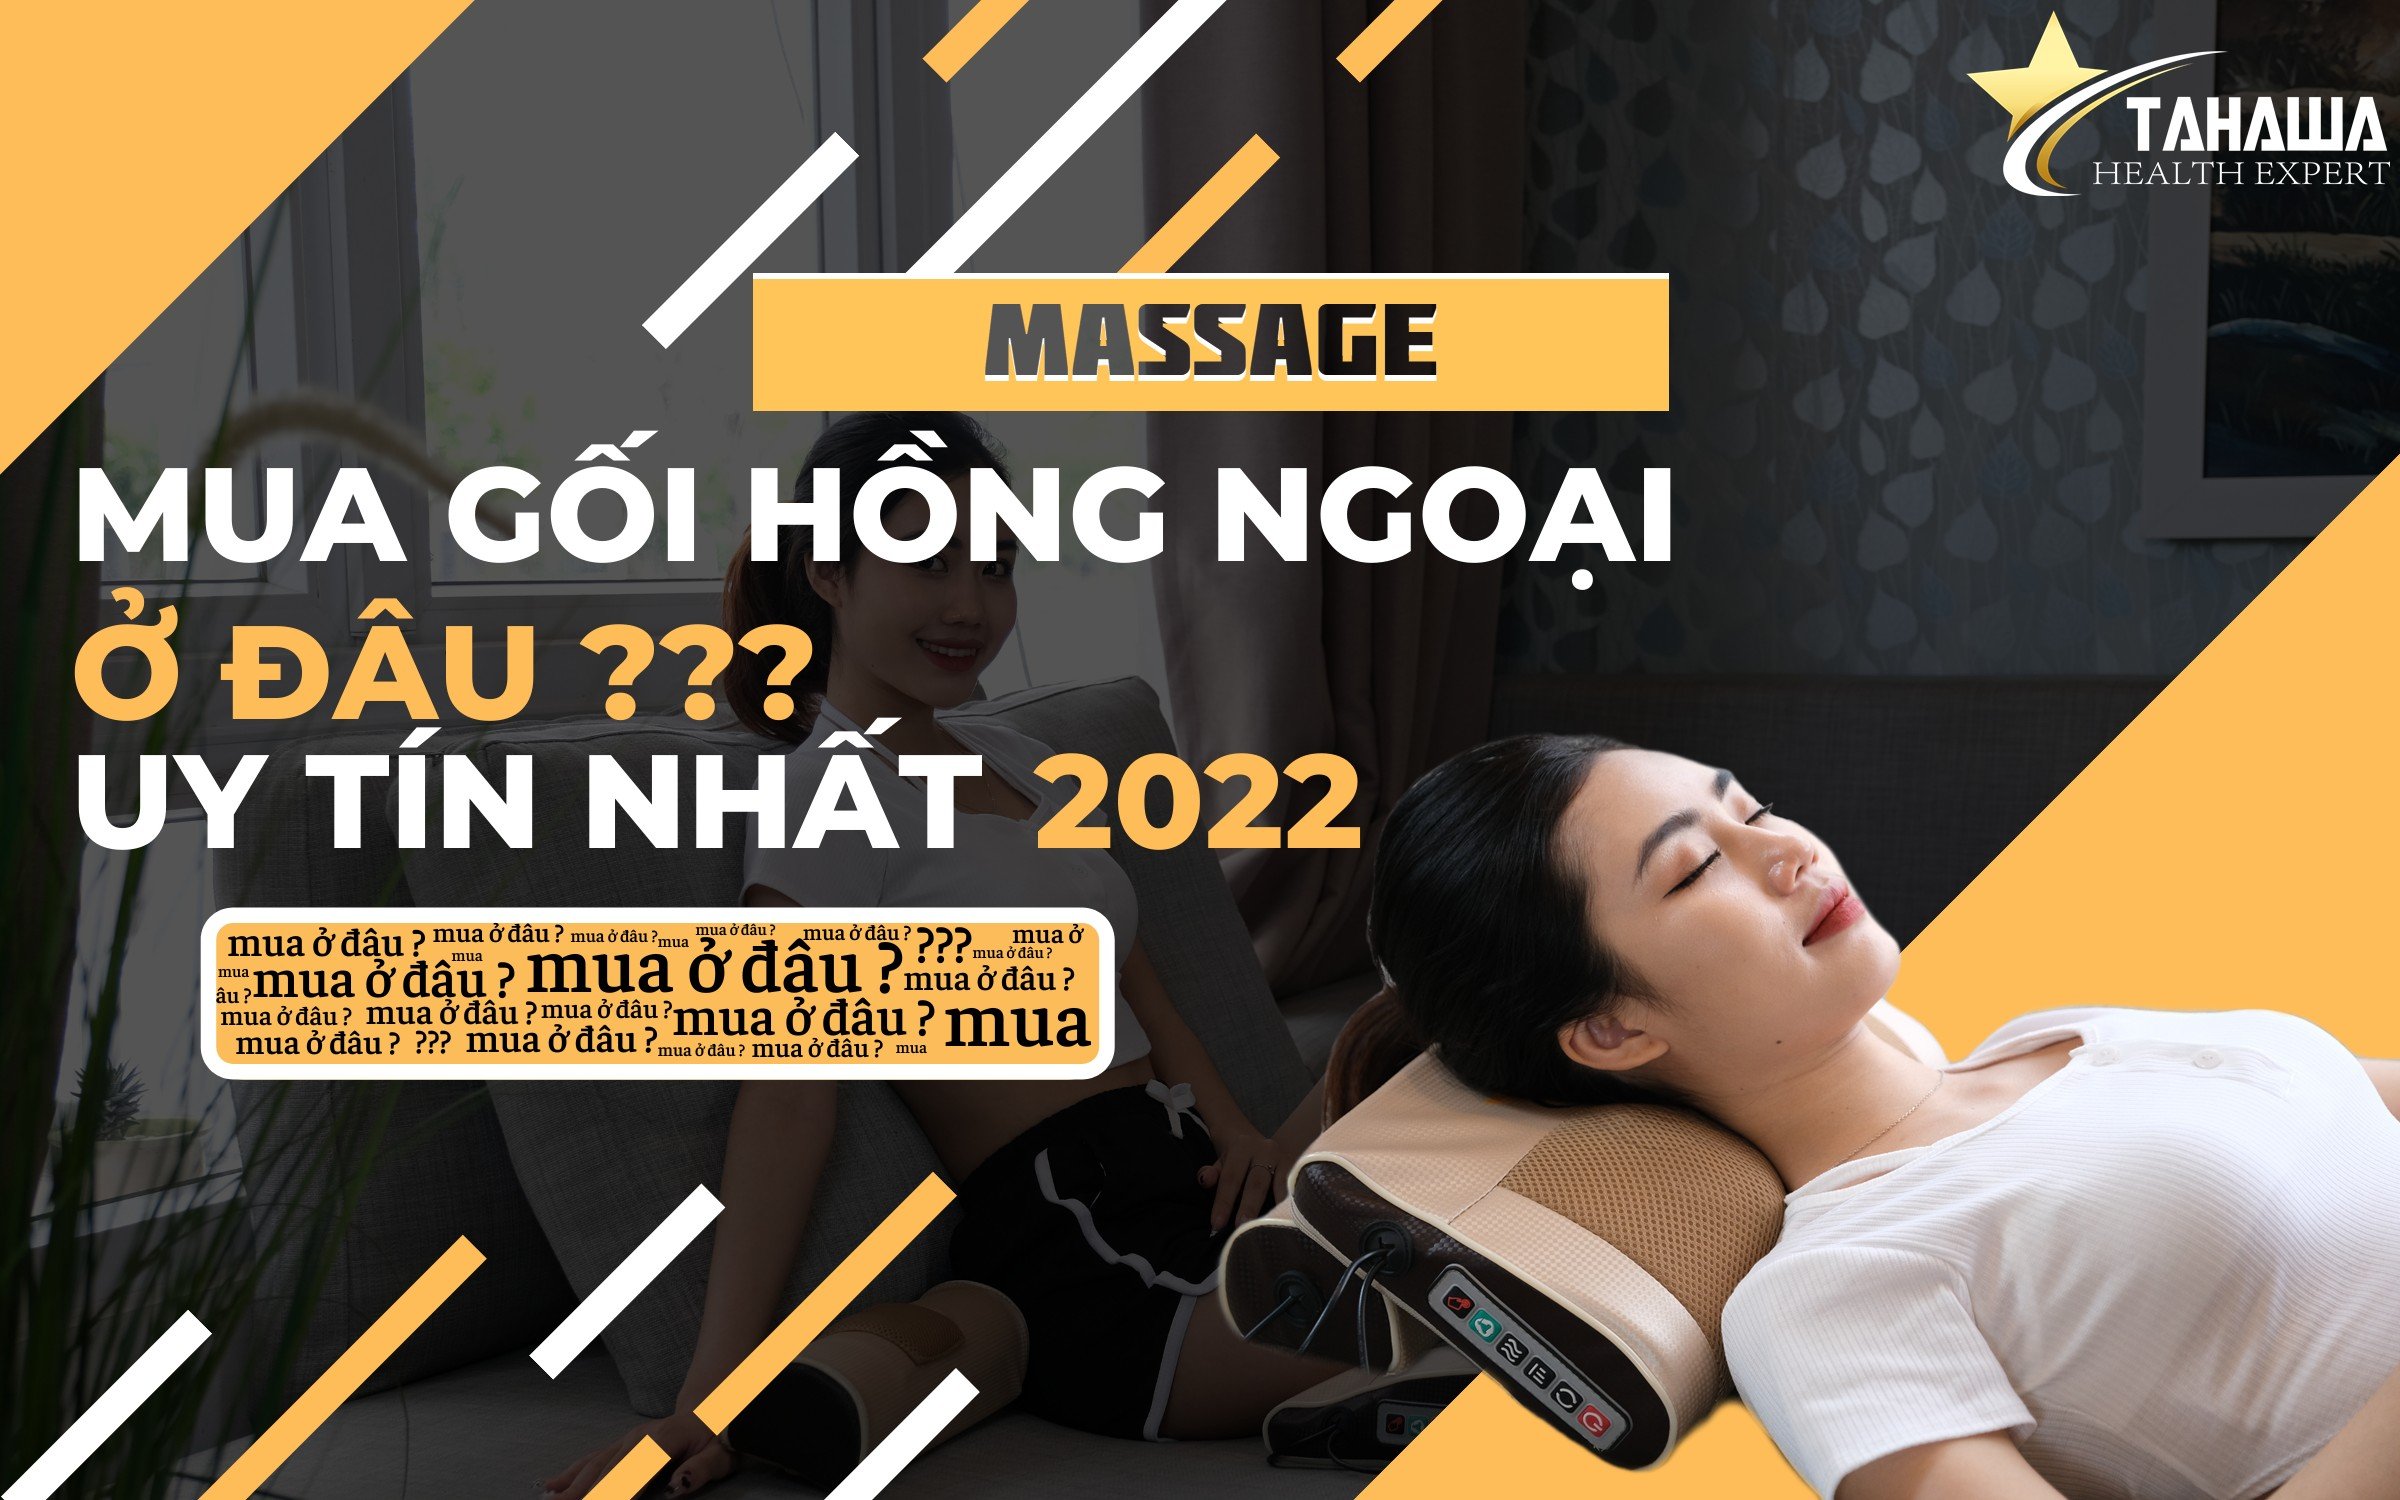 Nếu bạn muốn thư giãn và tận hưởng một trải nghiệm gối massage tốt nhất, hãy tìm mua sản phẩm đáng tin cậy từ các thương hiệu uy tín. Gối massage hồng ngoại là một giải pháp giúp bạn giảm đau và mỏi mệt sau một ngày dài làm việc.